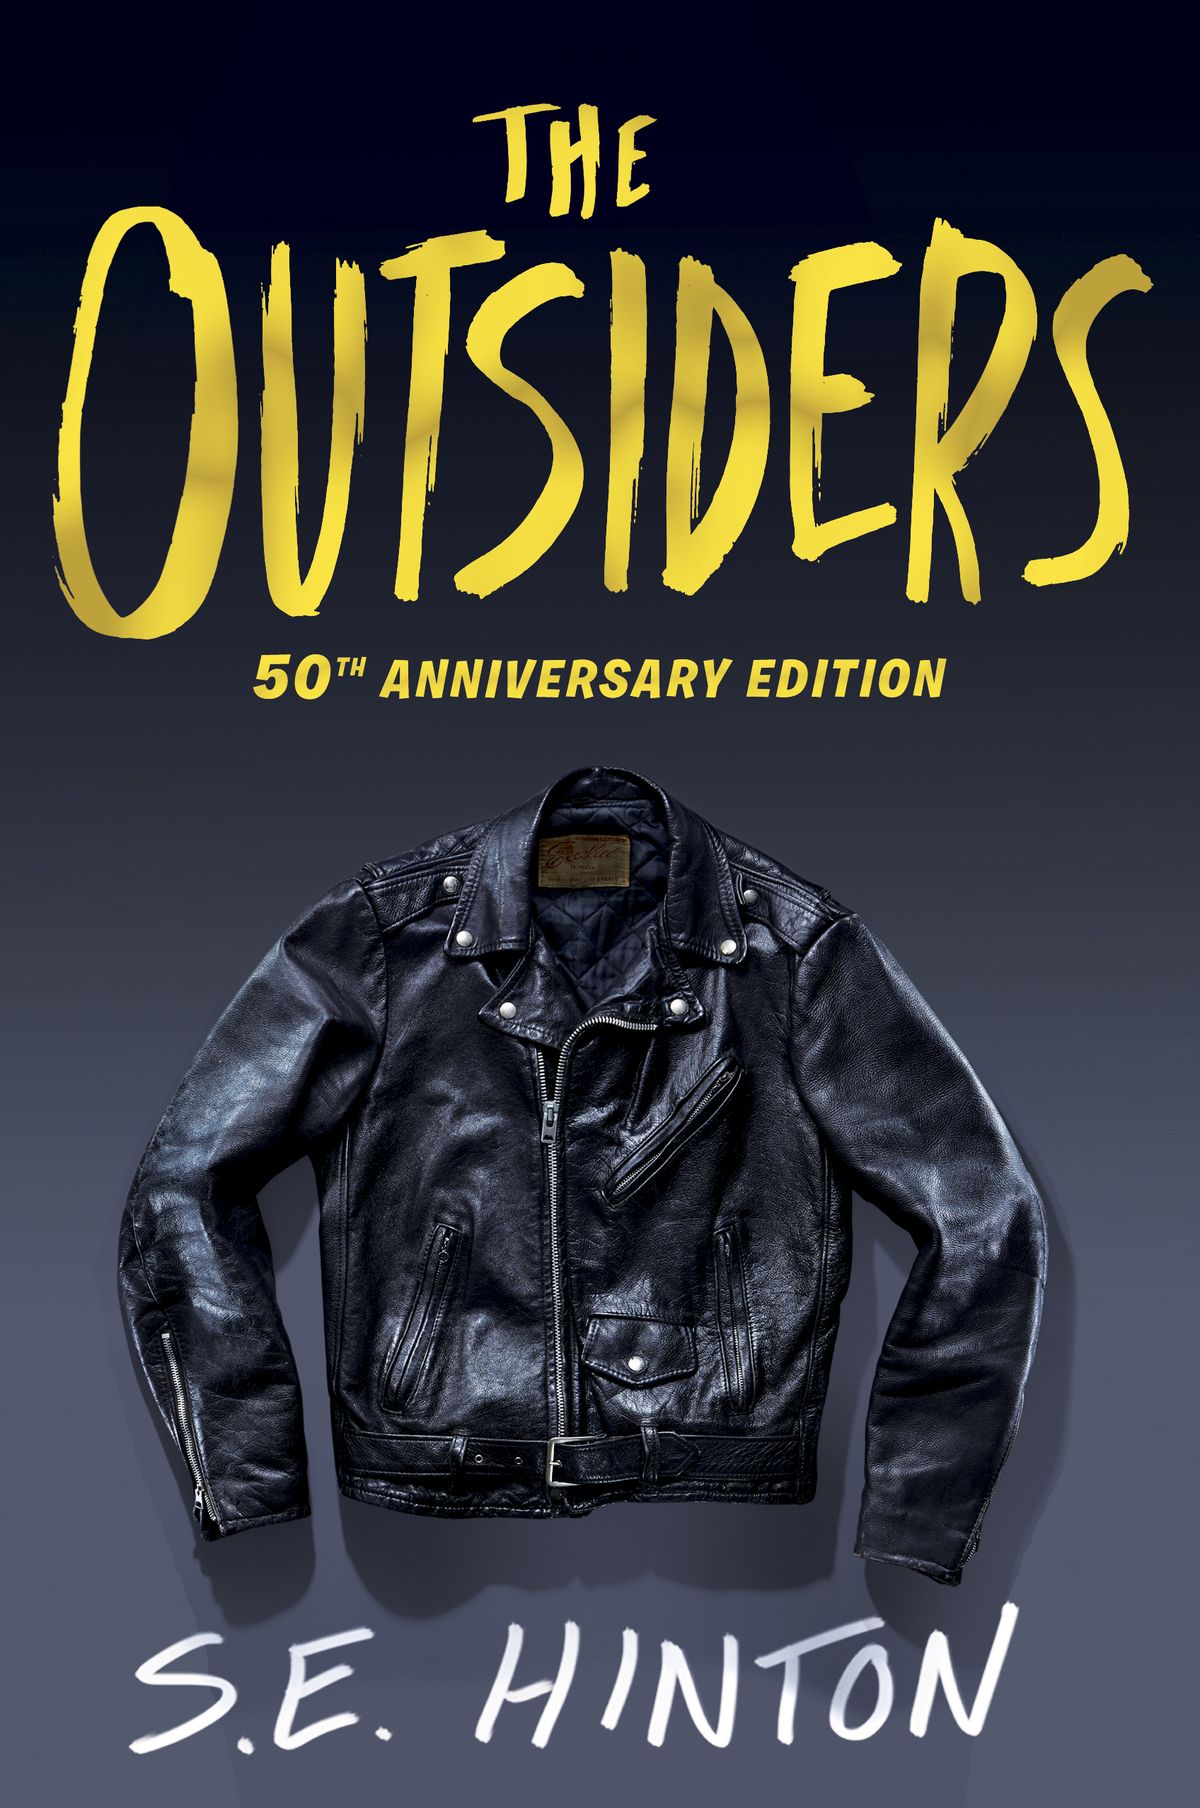 'The Outsiders' bekommt ein neues Cover für seinen 50. BDay